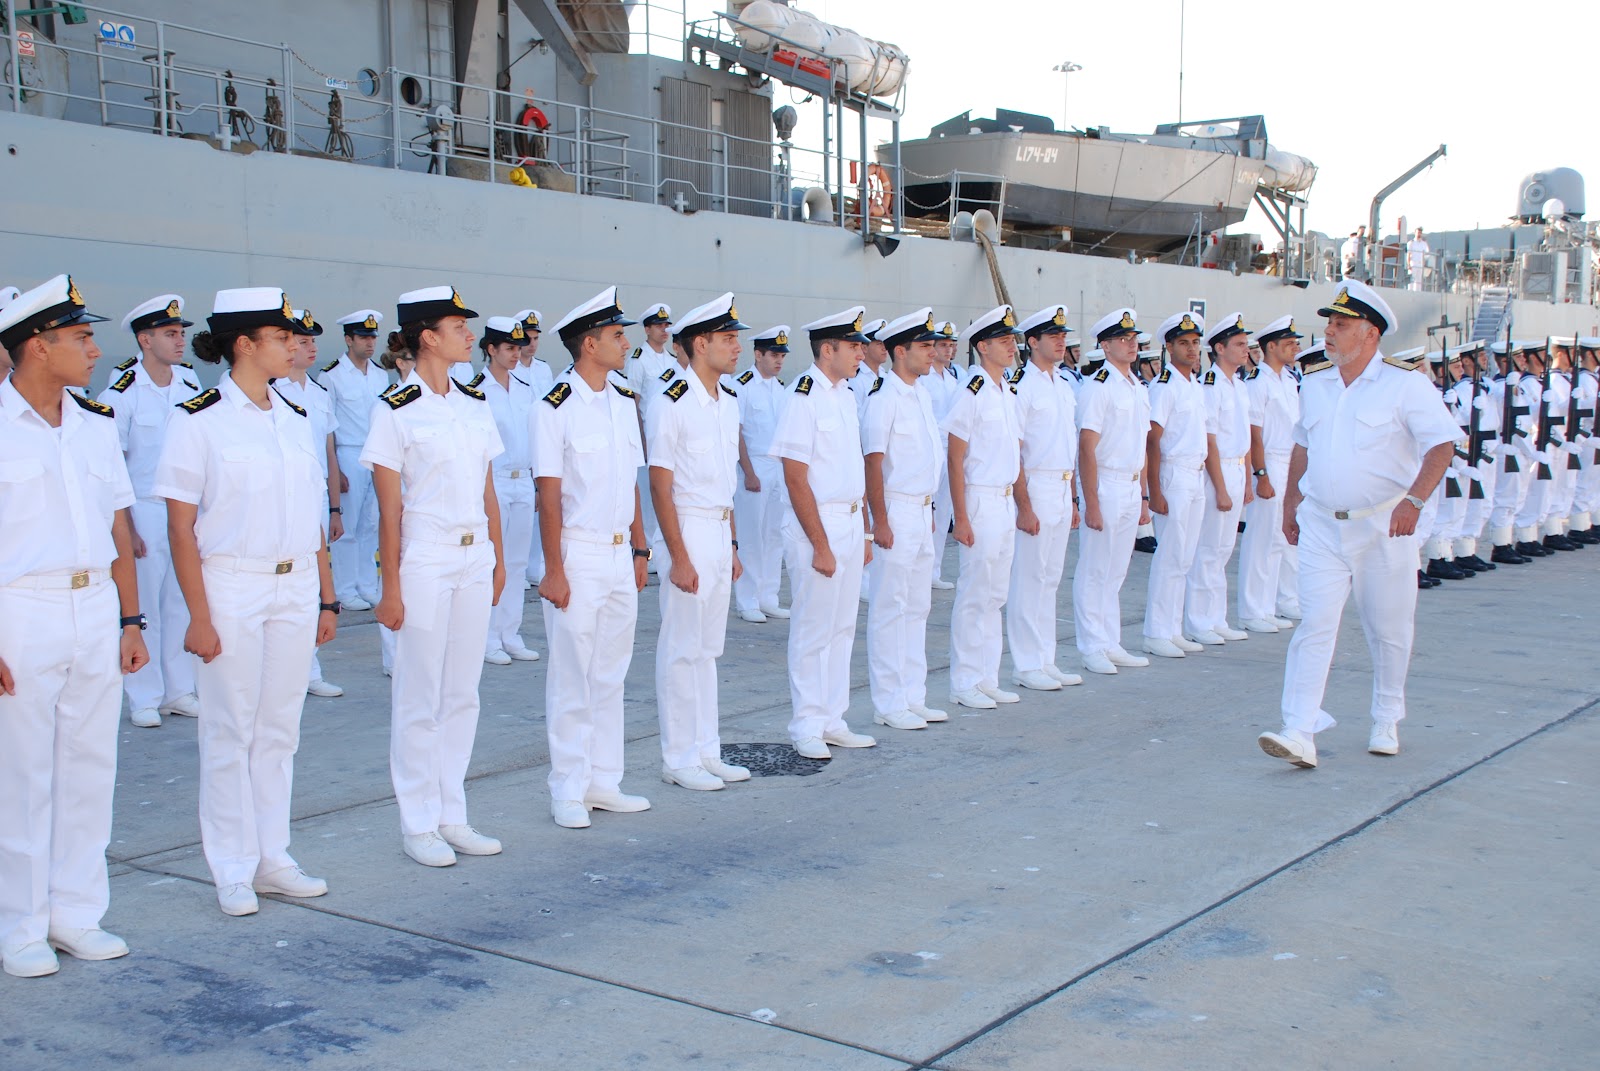 Προκήρυξη για 41 θέσεις στη Σχολή Ναυτικών Δοκίμων – Ποια καθήκοντα αφορά